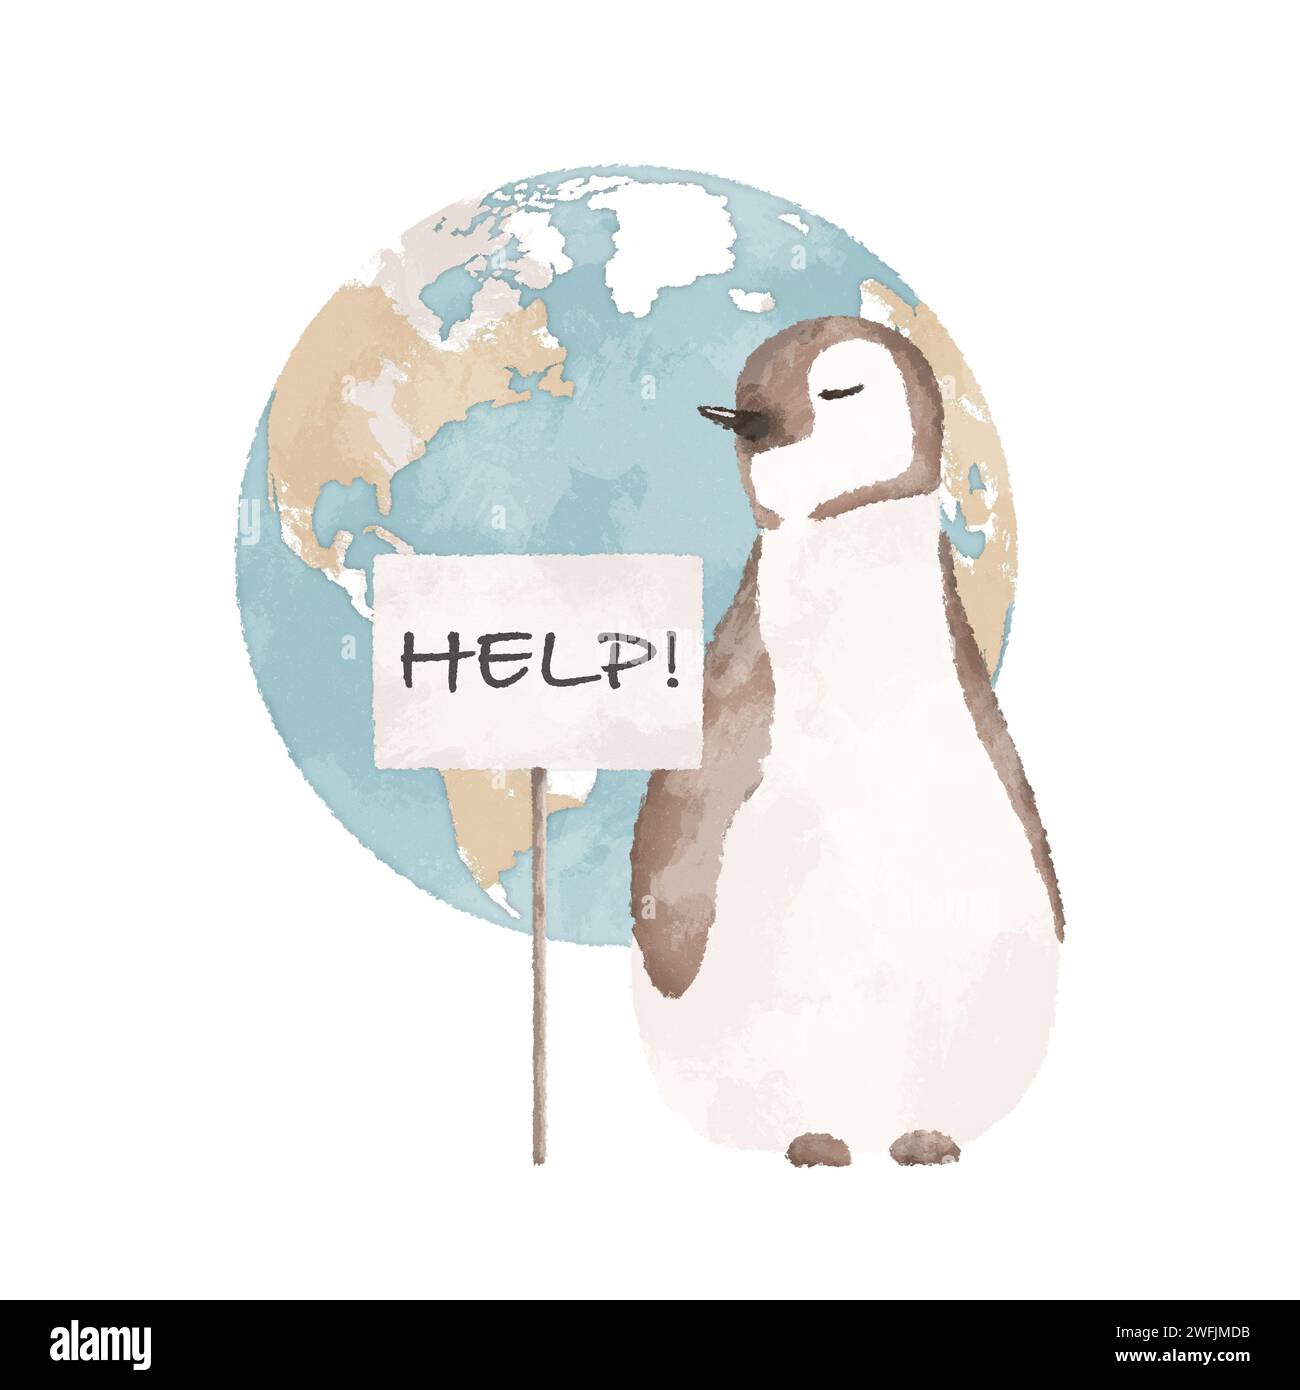 Pingouin avec un signe d'aide et une illustration de la planète Terre. Concept de réchauffement climatique. Illustration du concept de changement climatique. Banque D'Images